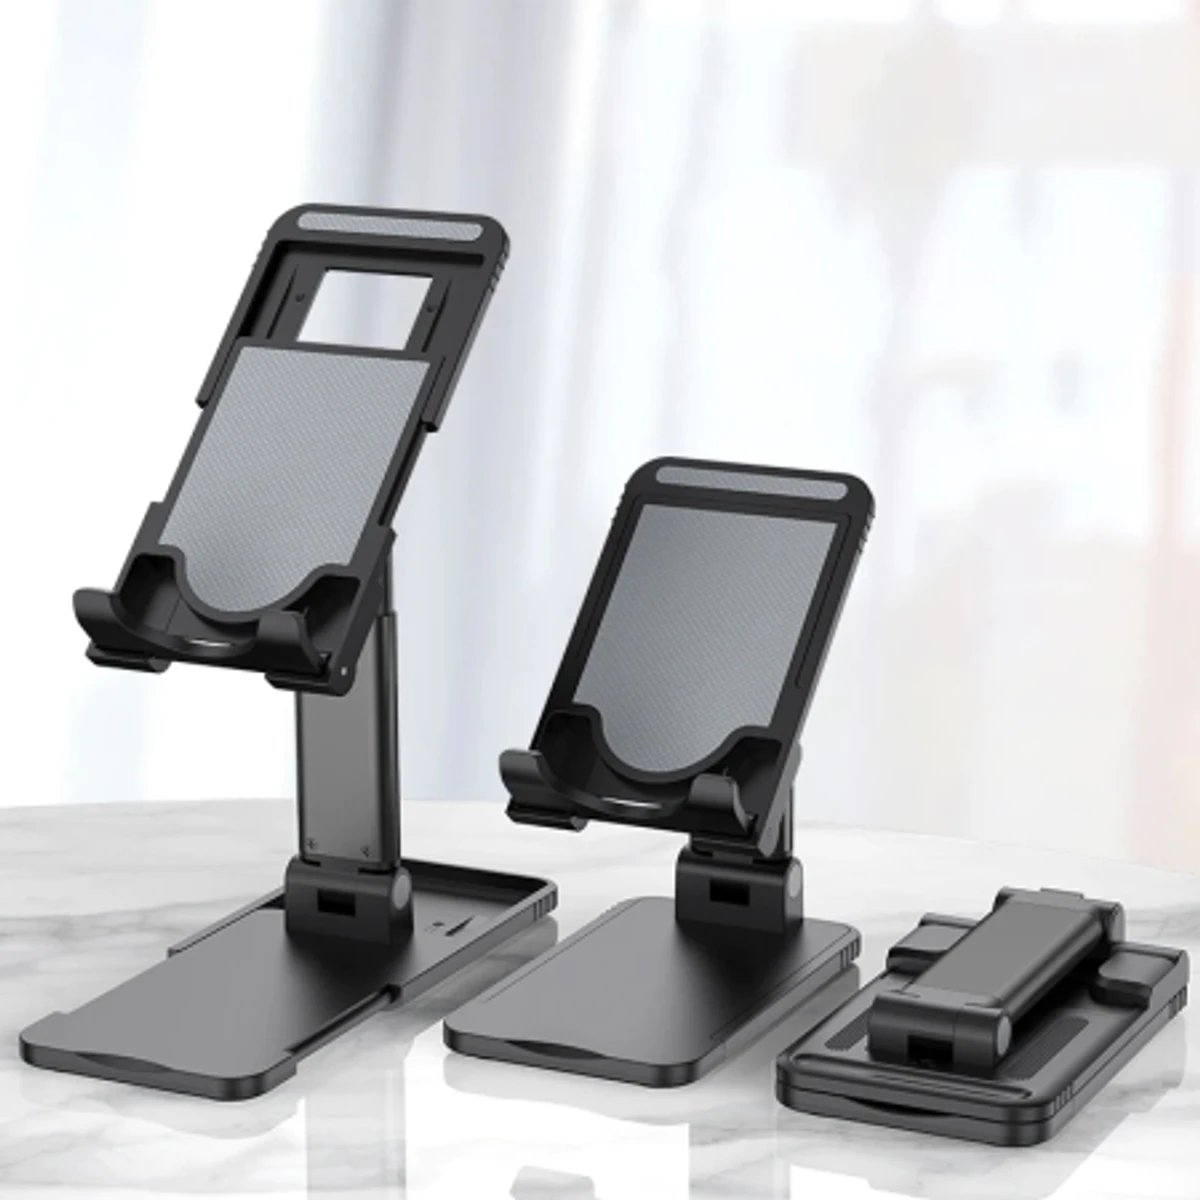 Foldable phone stand holder, Desktop Mobile Stand, Holder, Adjustable, Lift able, Fold able, Universal